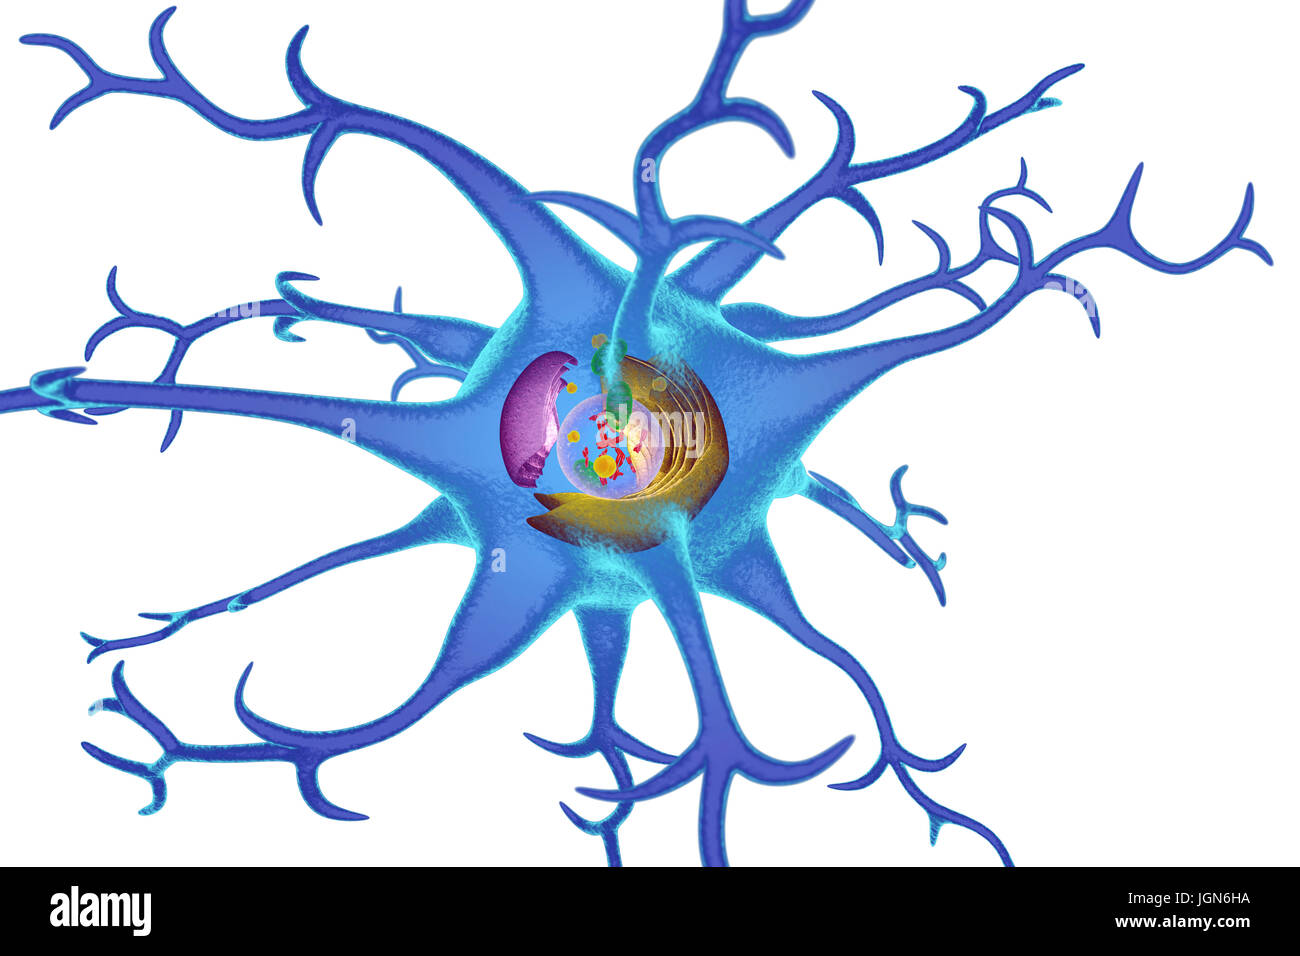 Illustrazione di organelli in una cellula nervosa (neurone). I neuroni di trasmettere informazioni in tutto il sistema nervoso centrale (CNS) e dal CNS al resto del corpo. Al centro è il nucleo (trasparente), che contiene i cromosomi (rosso) che trattengono la cellula di informazioni genetiche. Il reticolo endoplasmatico (ER, rosa) è il sito di sintesi lipidica e la produzione di le proteine legate alla membrana. Il corpo del Golgi (giallo) modifica pacchetti e proteine. Mitocondri (verdi) fornire la cella con energia. Foto Stock